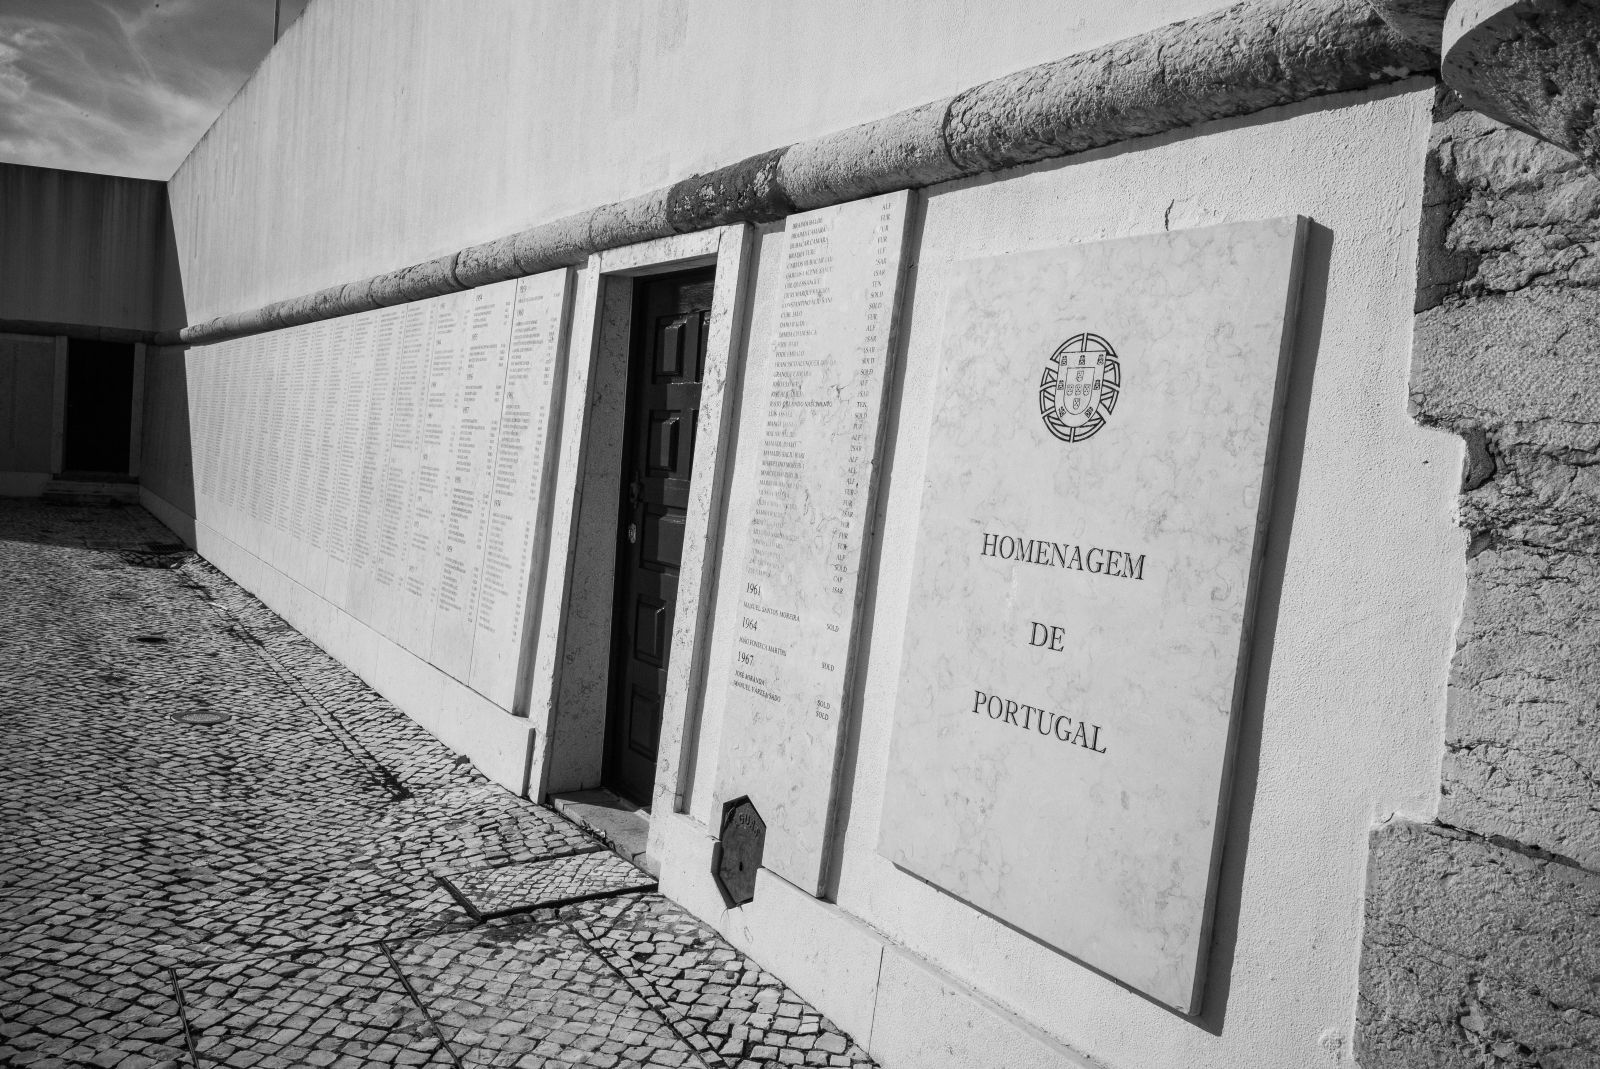 Aspetos do Monumento aos Combatentes do Ultramar, Lisboa, 2020. Foto: © Rui Sérgio Afonso